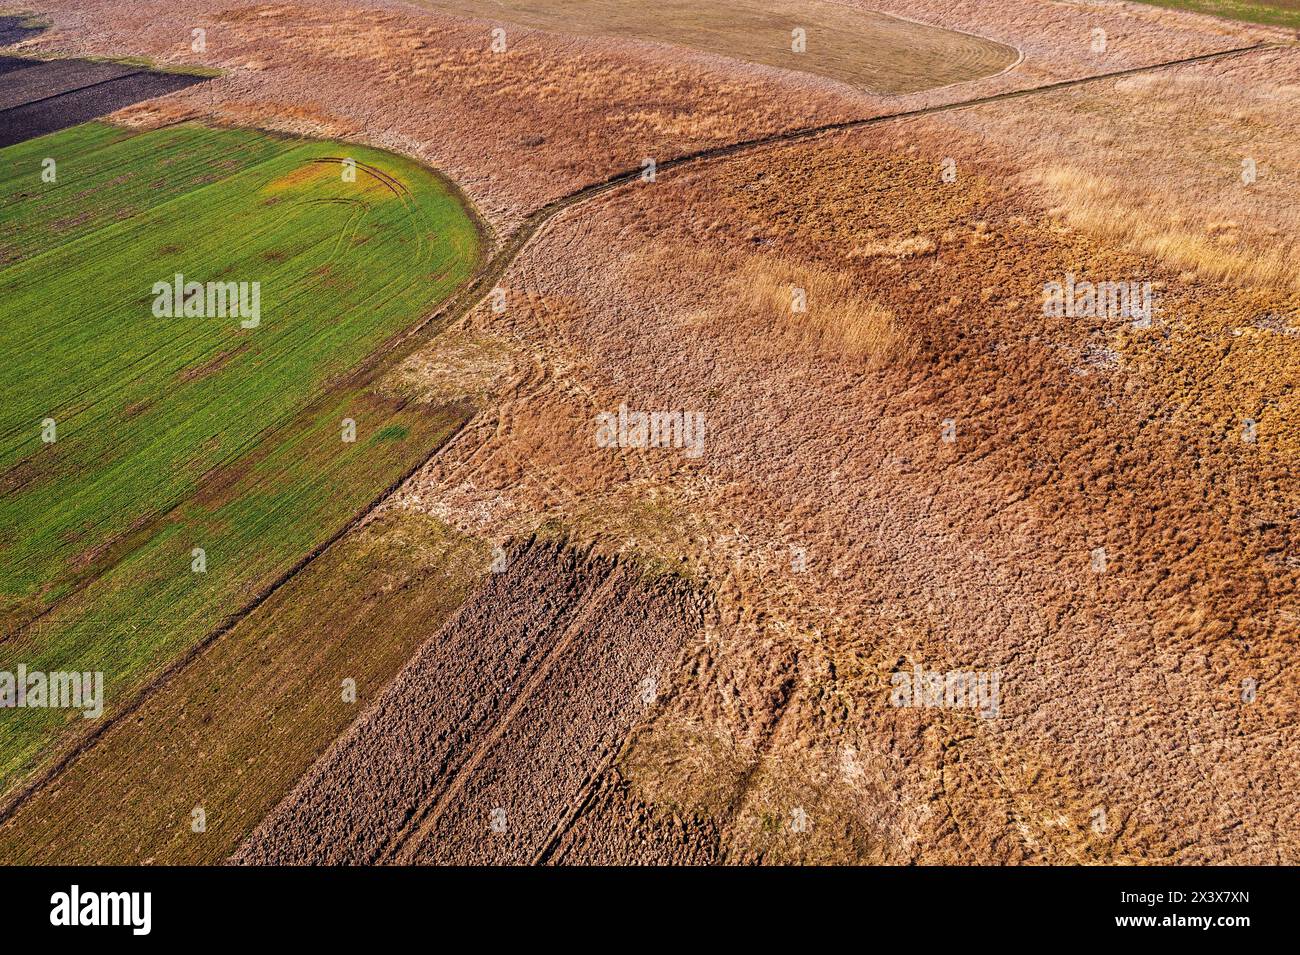 Sie verwandelt sich in ein fruchtbares Land mit reichem Boden, aus der vogelperspektive Stockfoto